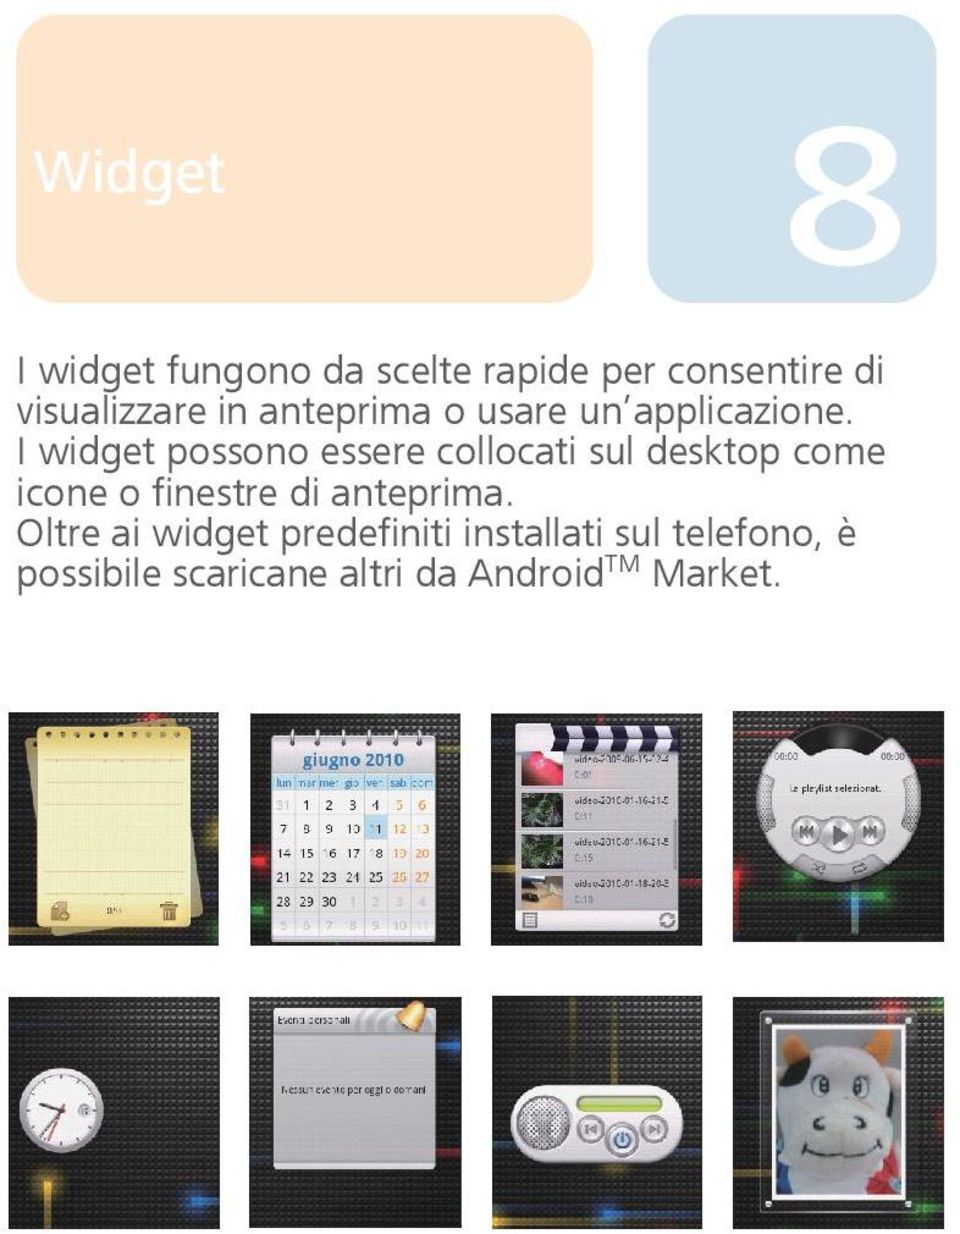 I widget possono essere collocati sul desktop come icone o finestre di